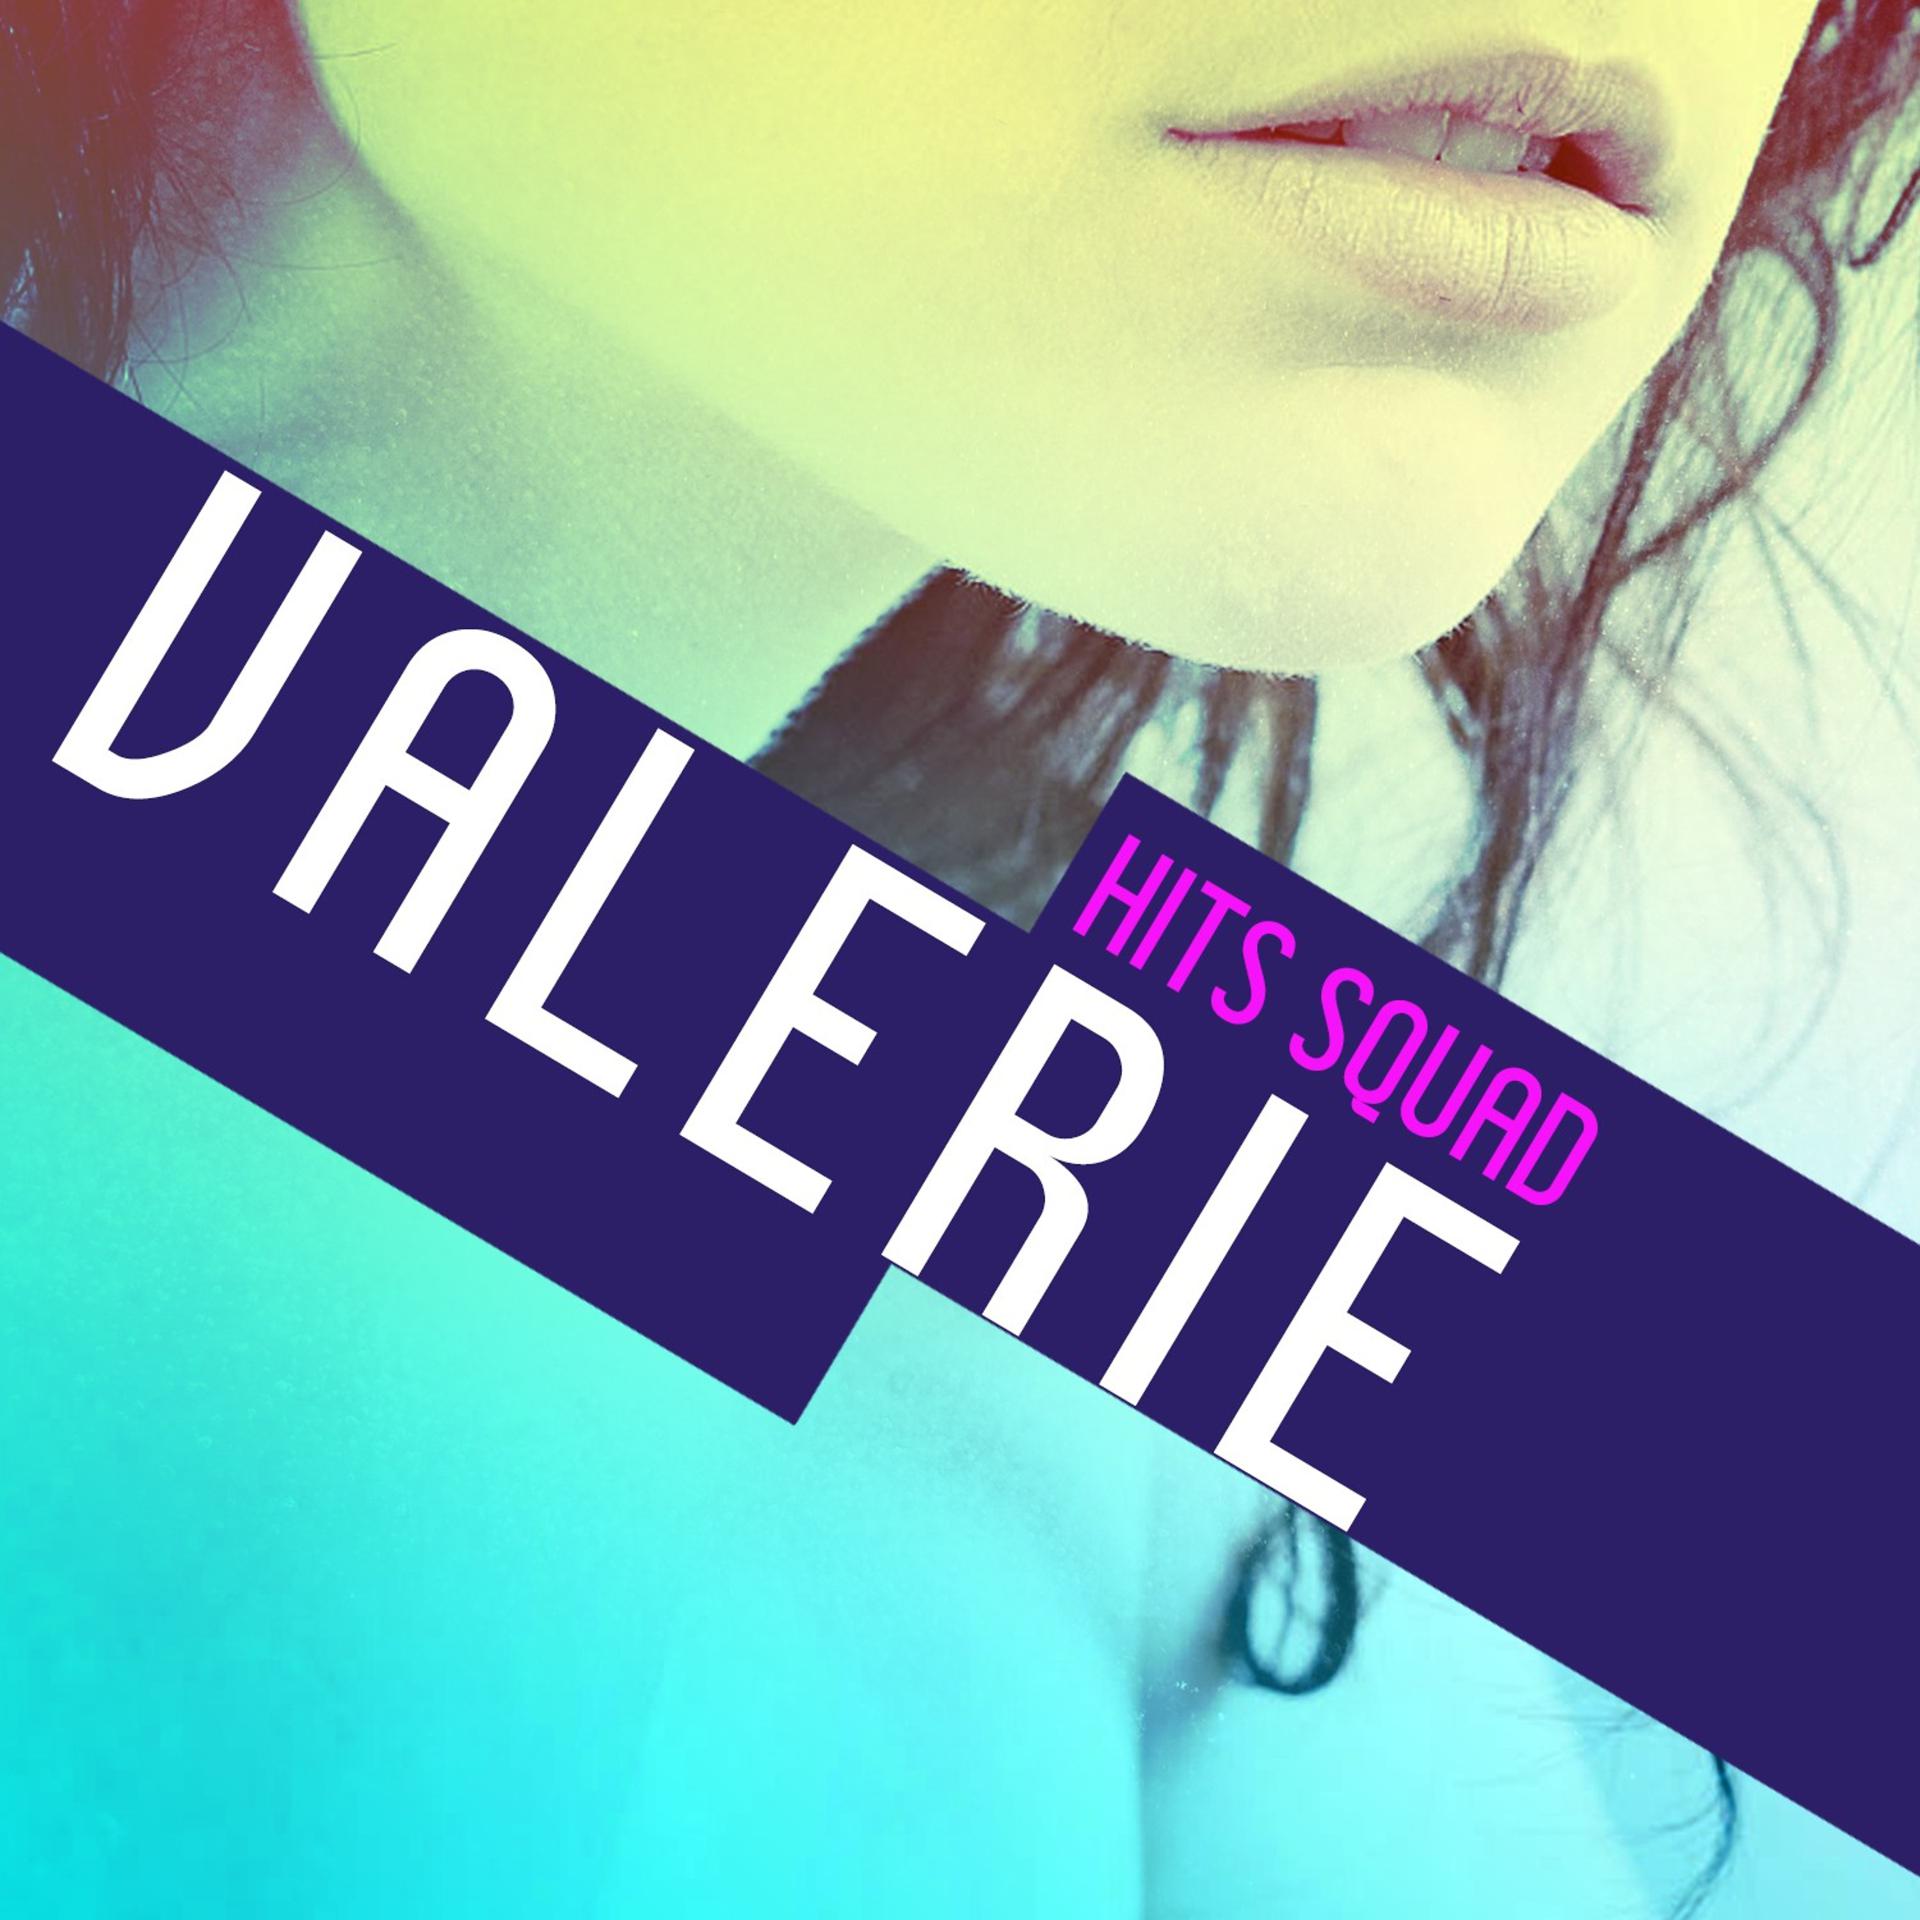 Постер альбома Valerie